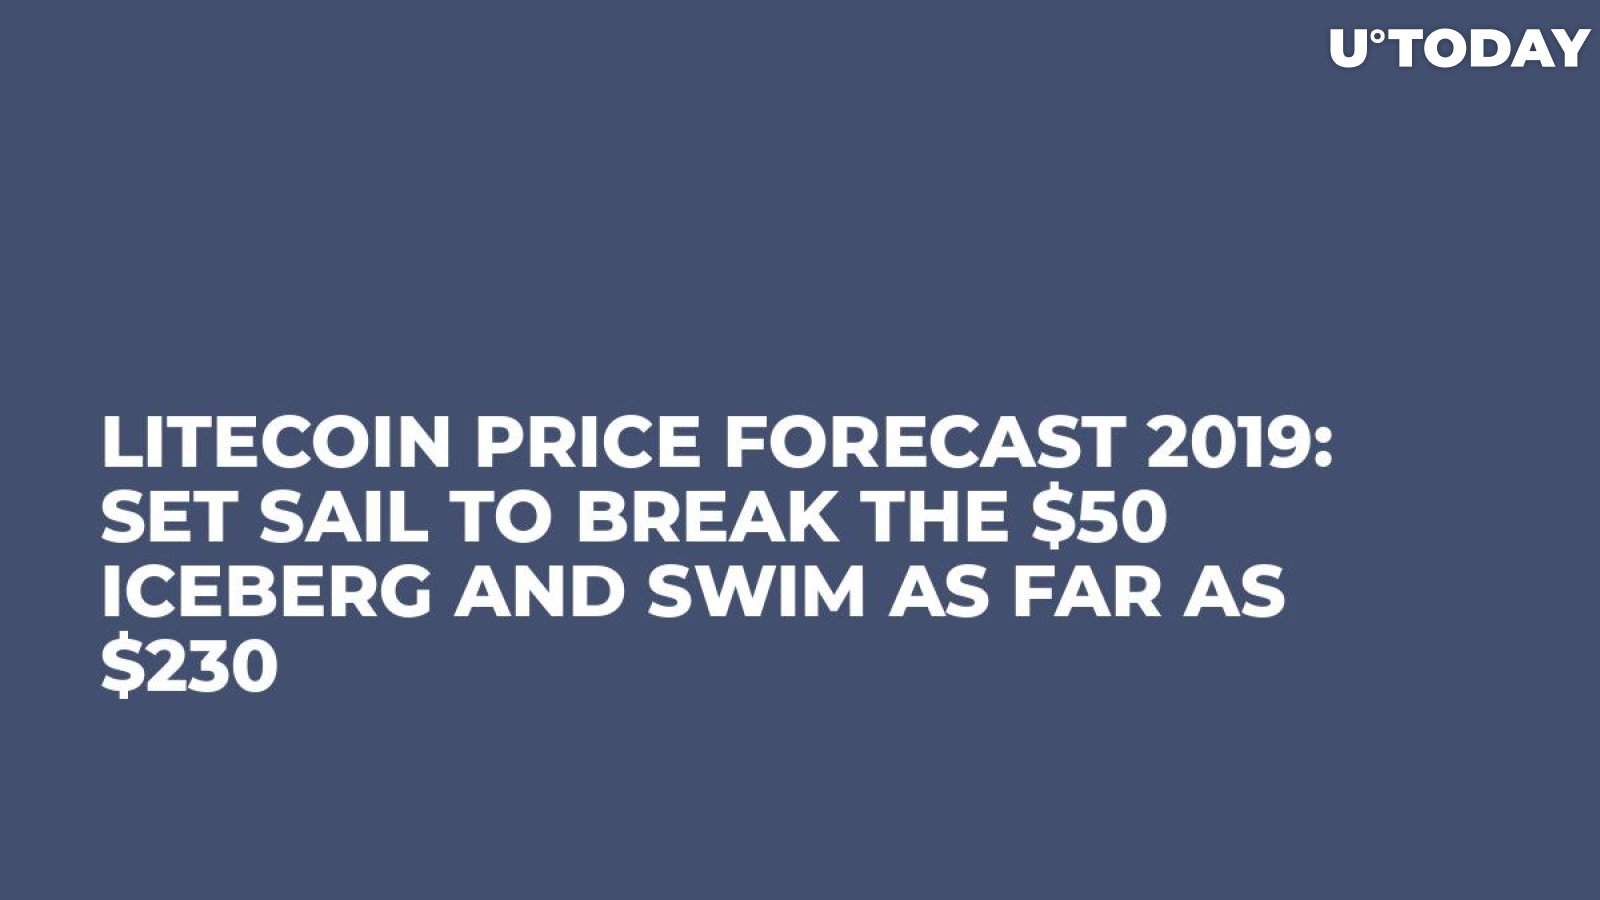 Litecoin Price Forecast 2019: Set Sail to Break the $50 Iceberg and Swim as Far as $230 